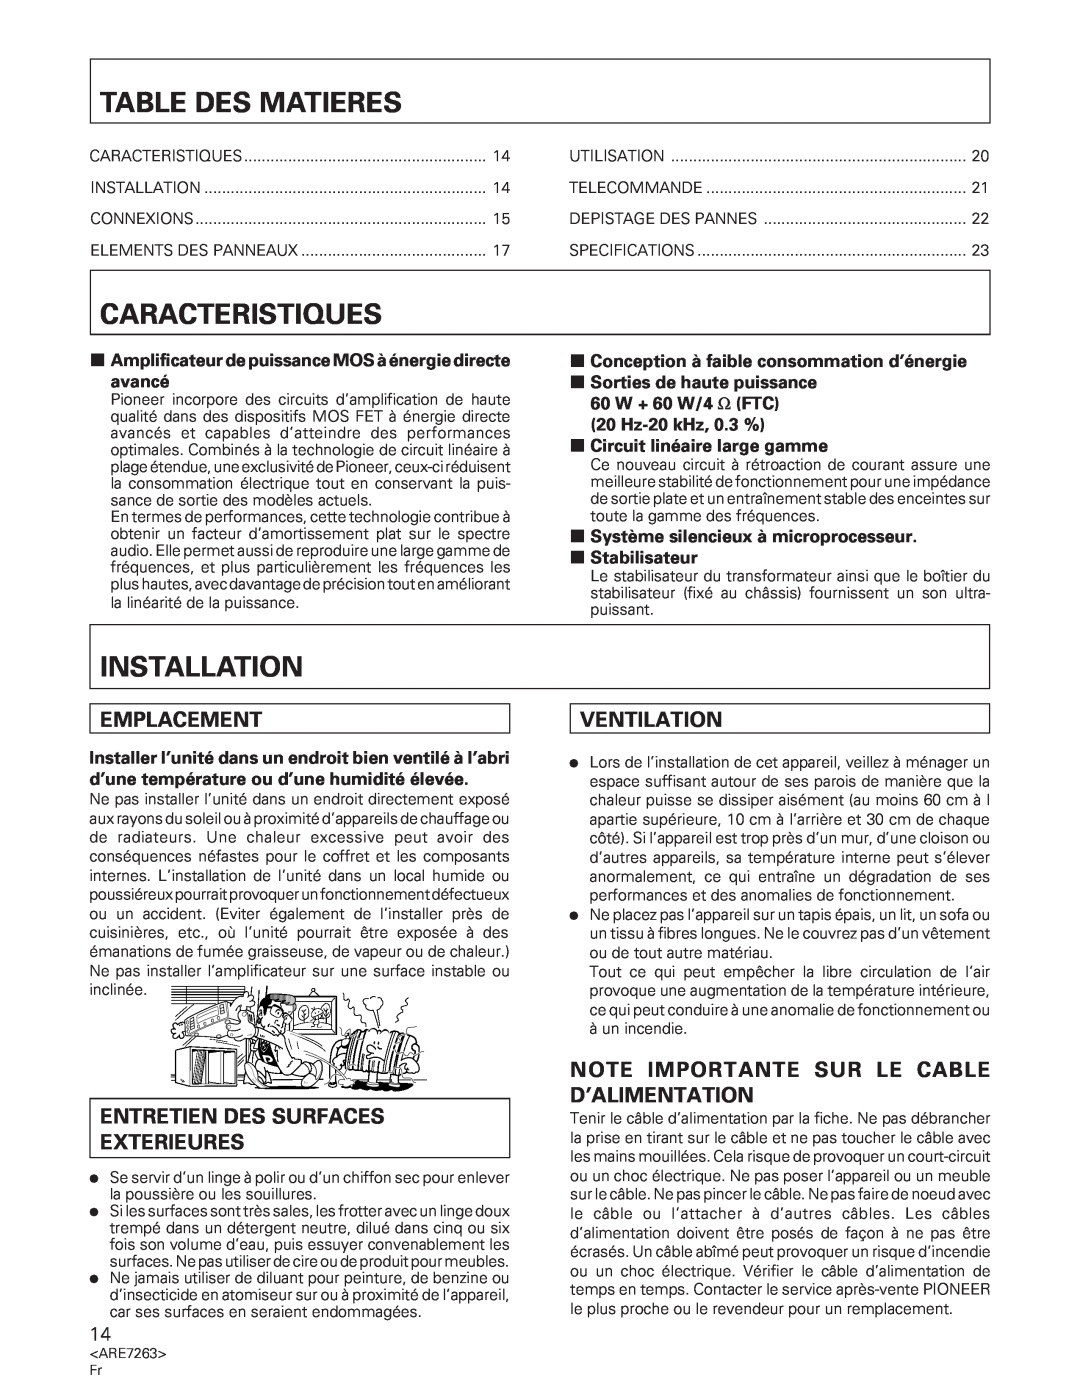 Pioneer A-35R Table Des Matieres, Caracteristiques, Emplacement, Entretien Des Surfaces Exterieures, 7Stabilisateur 